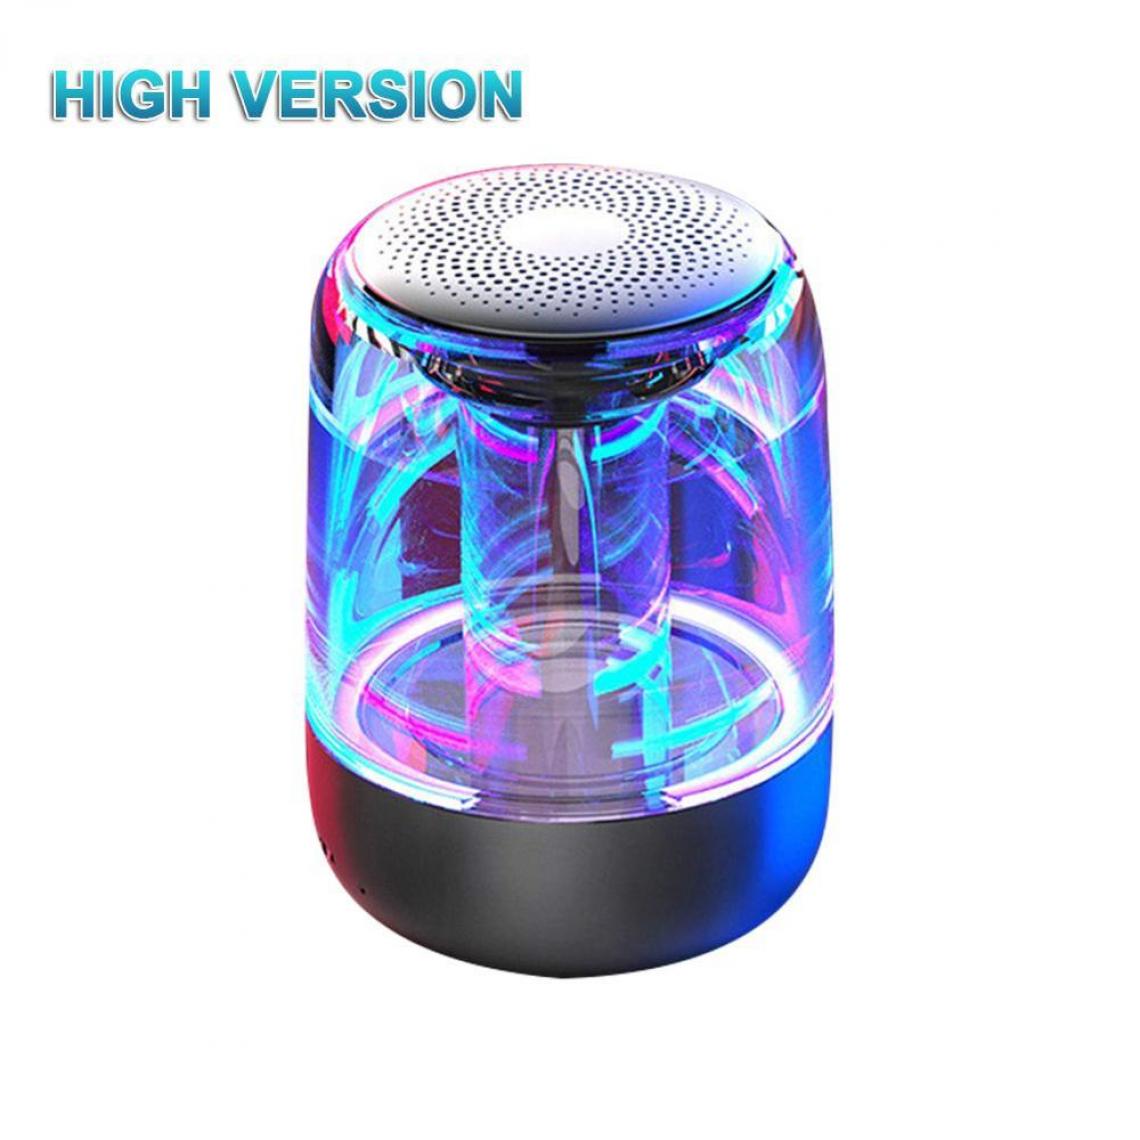 Universal - Haut-parleur portable Bluetooth 5.0 Subwoofer lumineux à LED transparent HiFi stéréo audio cool autour du téléphone | Haut-parleur portable (noir) - Hauts-parleurs